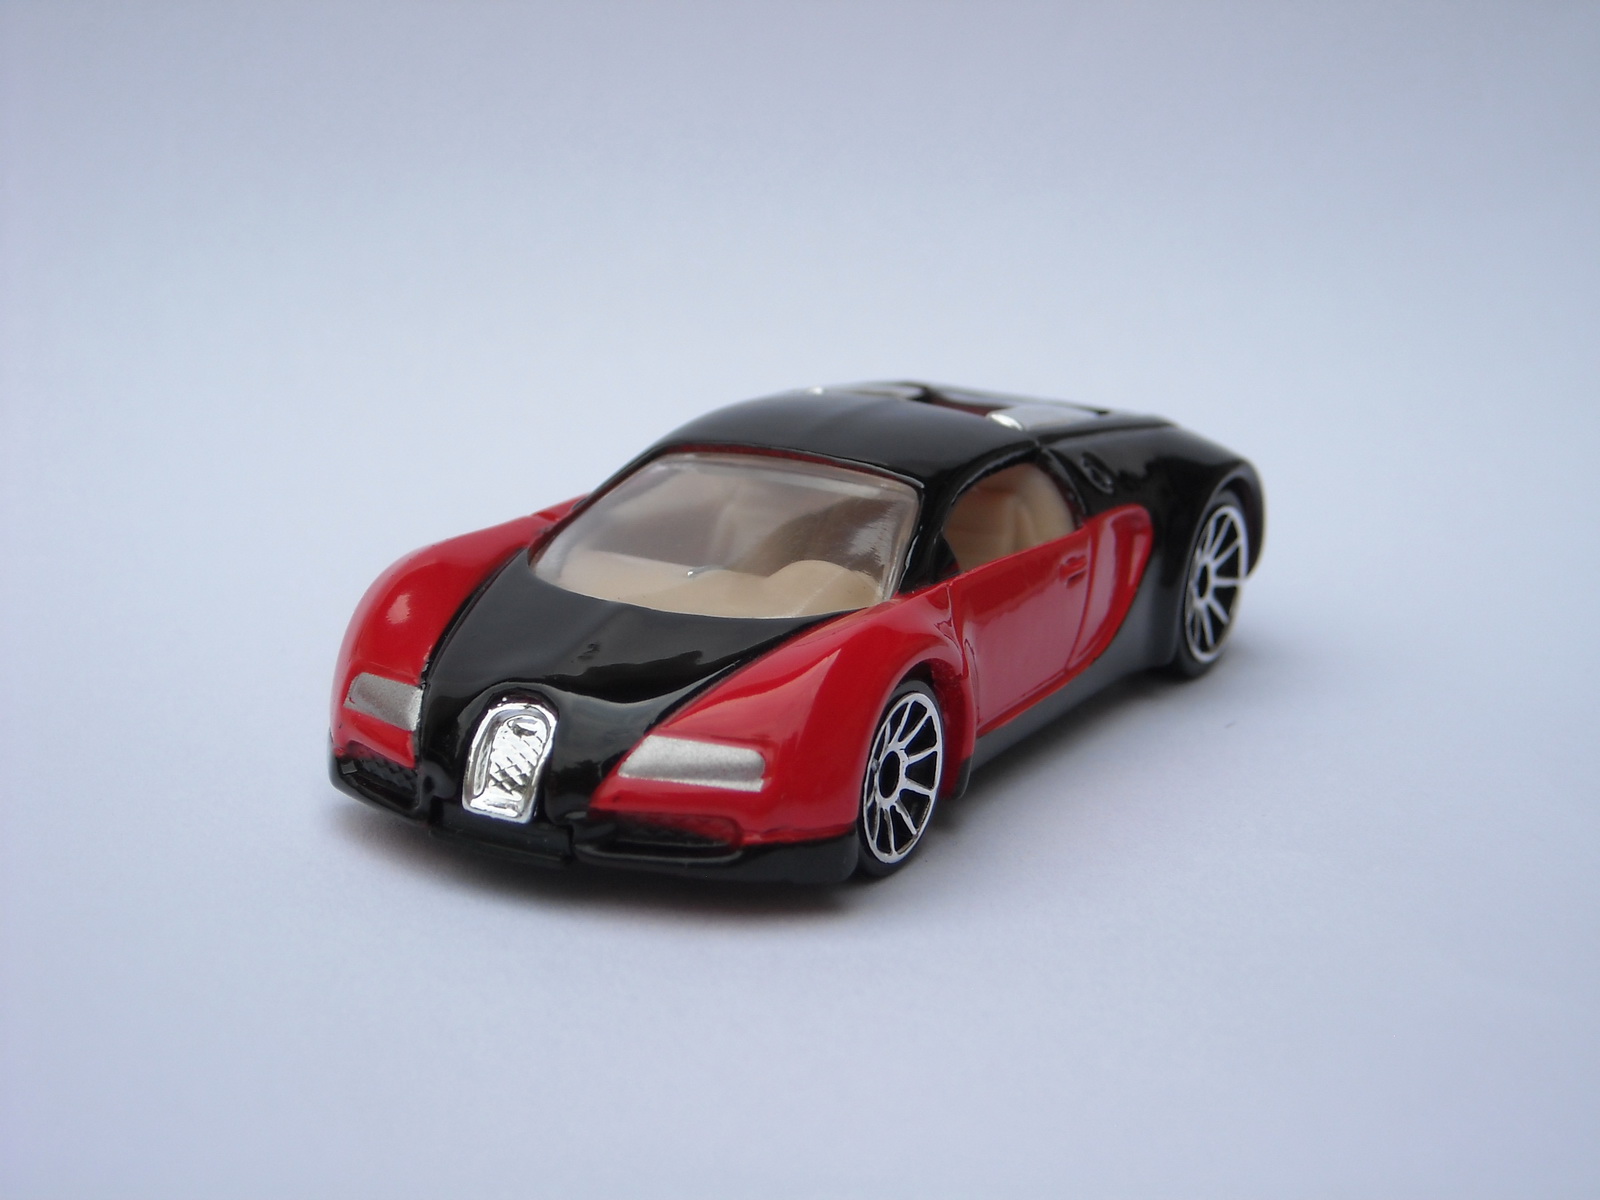 Хот вилс бугатти. Хот Вилс Бугатти Вейрон. Бугатти Вейрон хот Вилс 16.4. Hot Wheels Bugatti Veyron 16.4. Hot Wheels Bugatti Veyron.